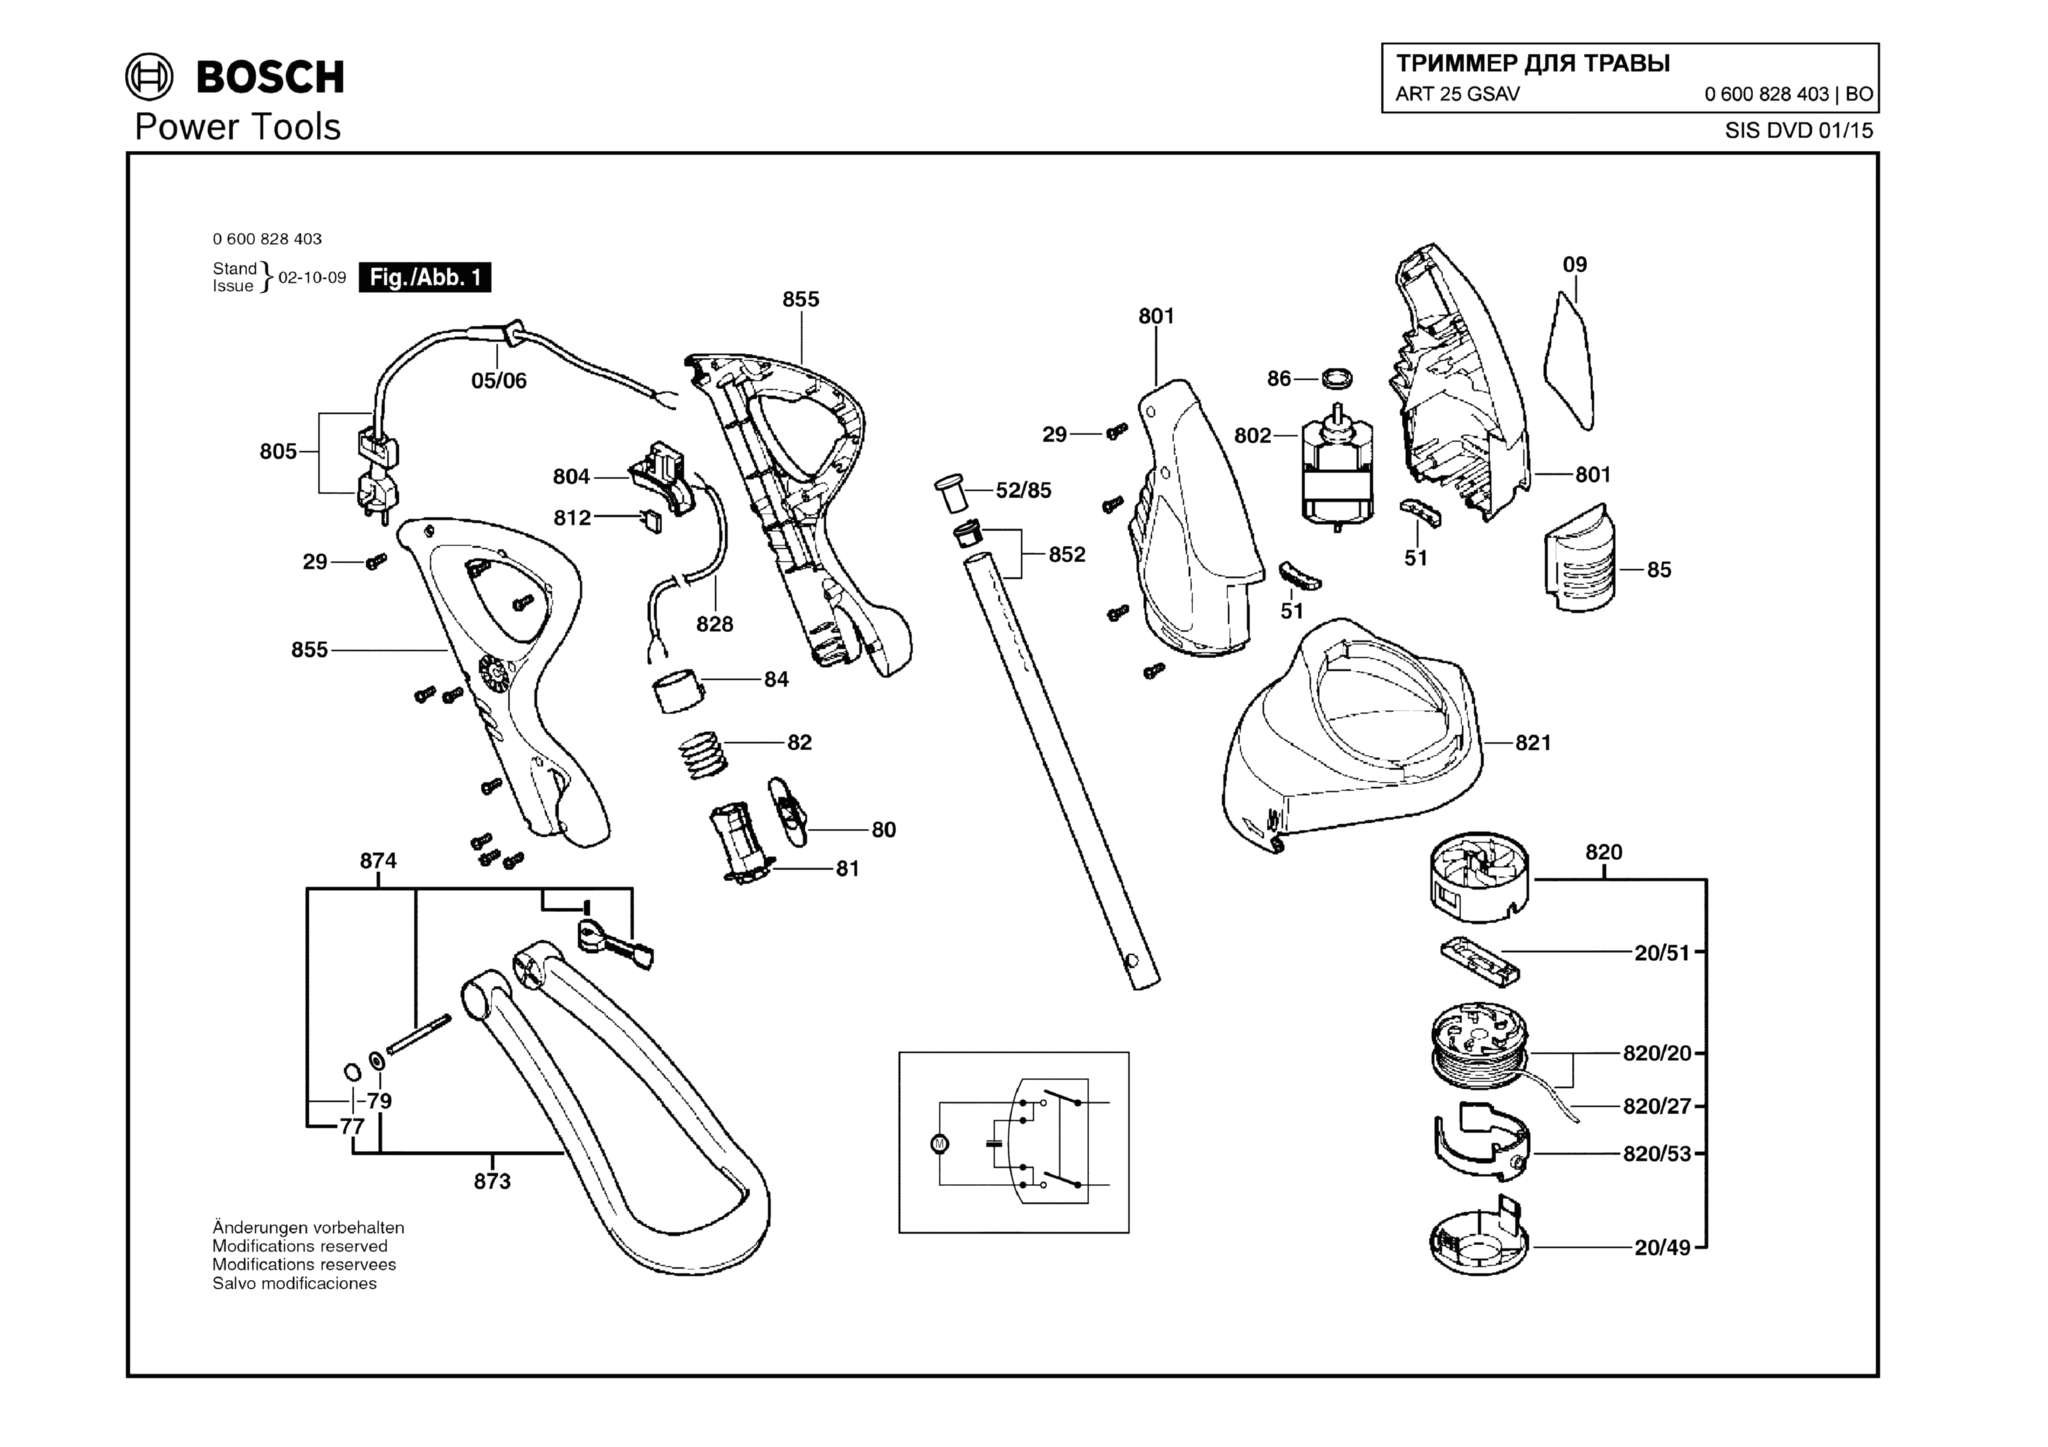 Запчасти, схема и деталировка Bosch ART 25 GSAV (ТИП 0600828403)